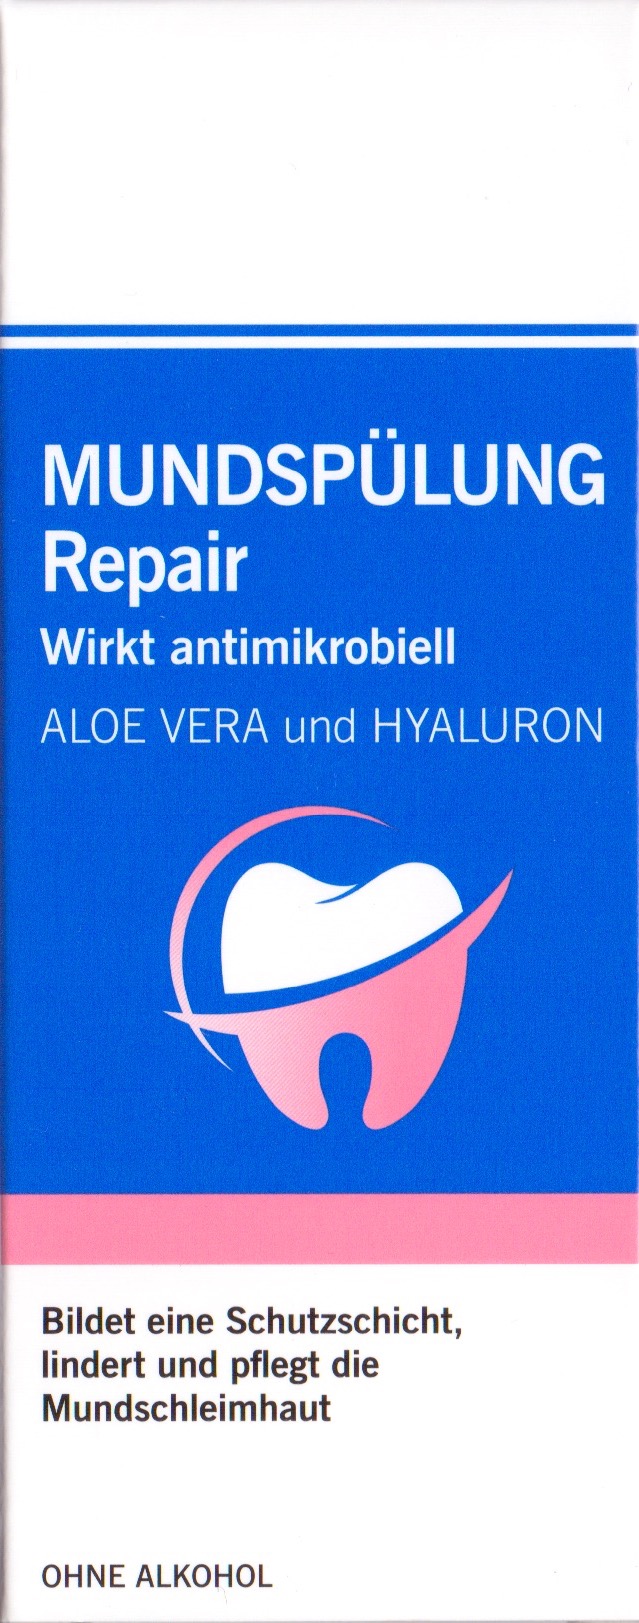 mundspülung repair